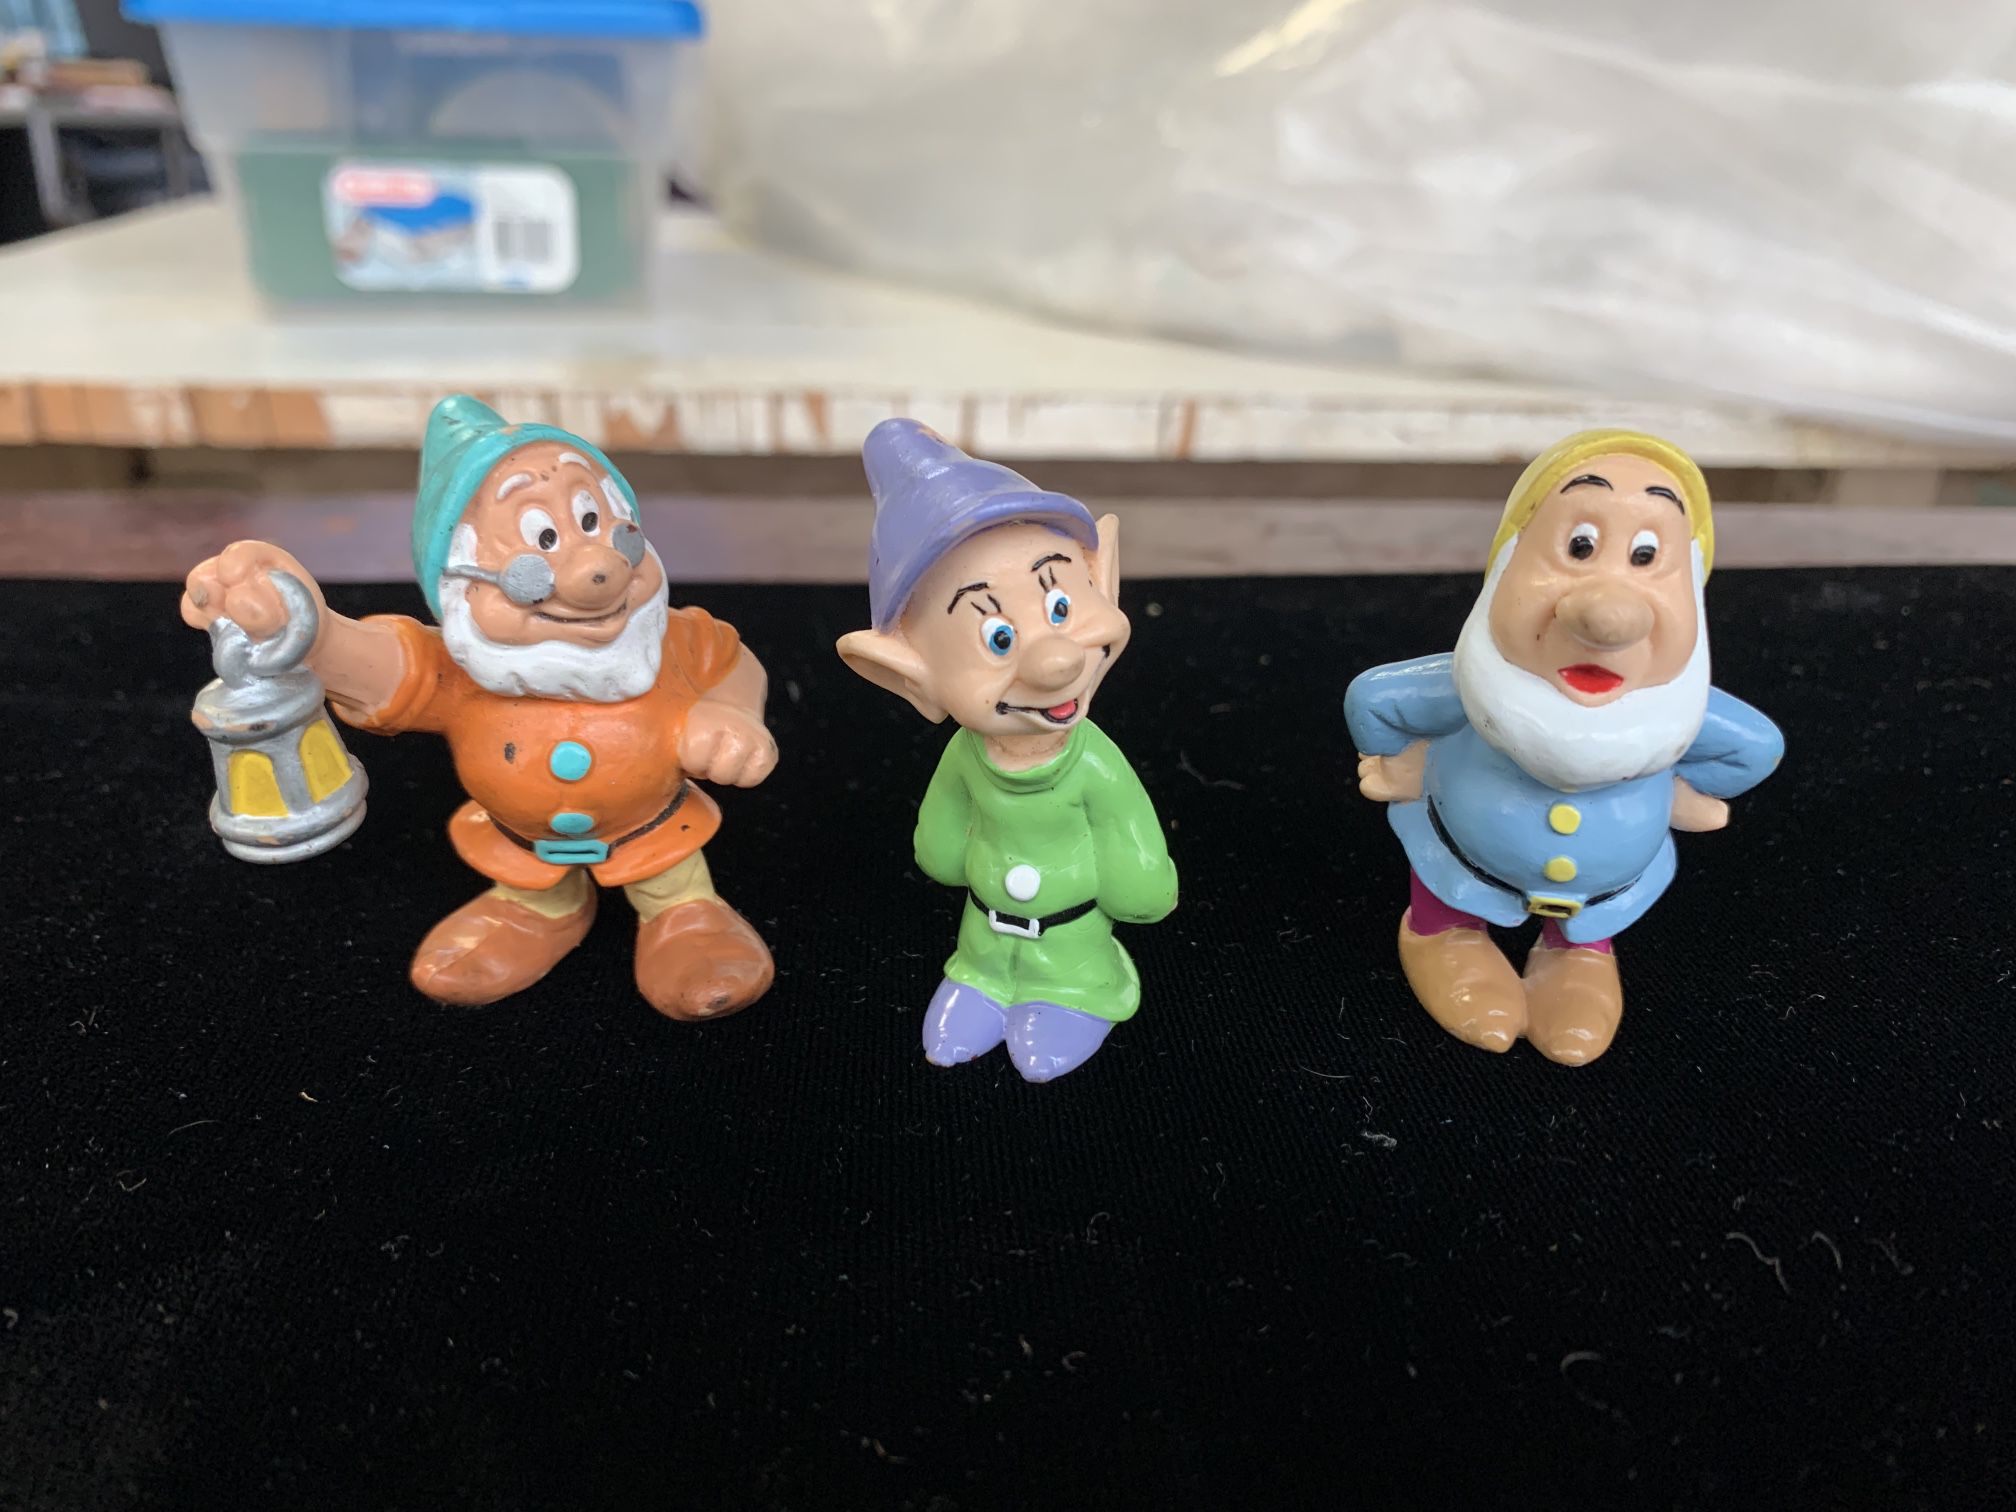 3 Dwarf Figurines: From Fairytale Snow White & The 7 dwarfs